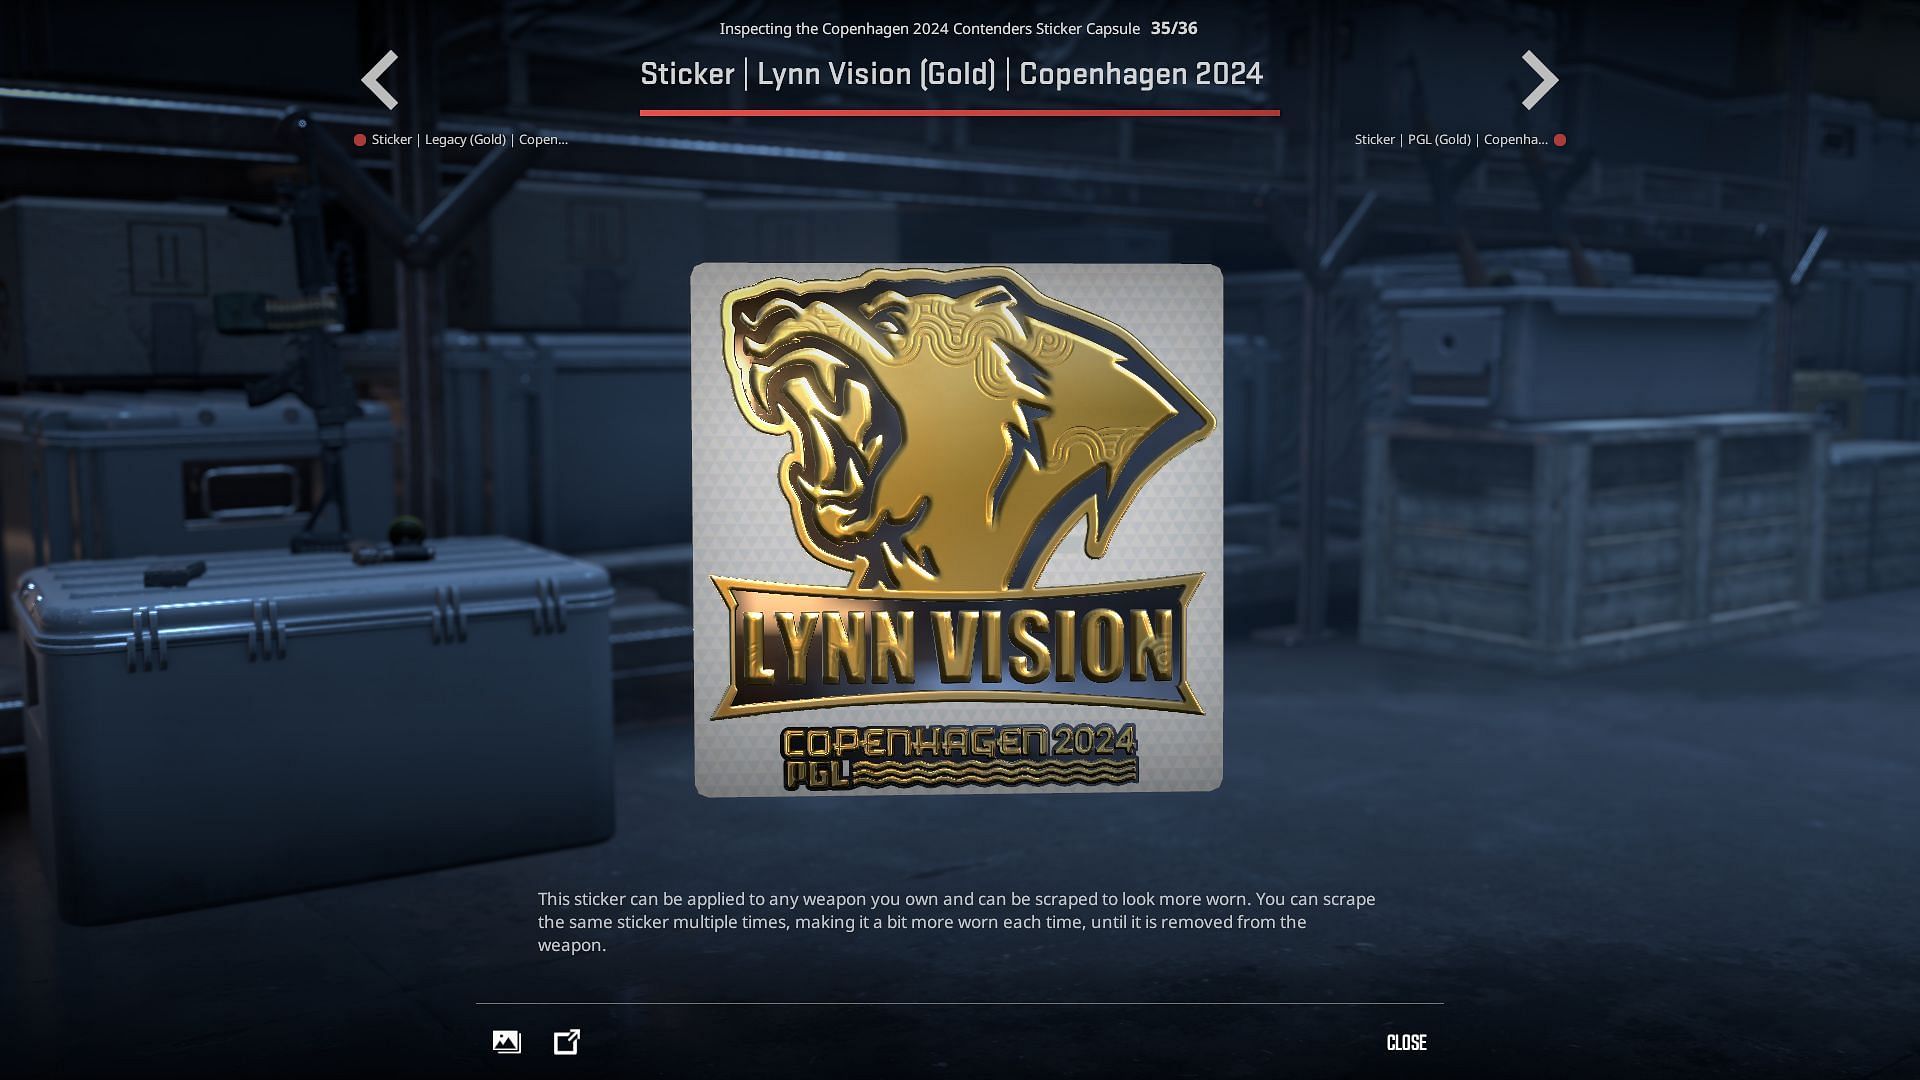 Lynn Vision Gaming Gold sticker (Image via Valve)